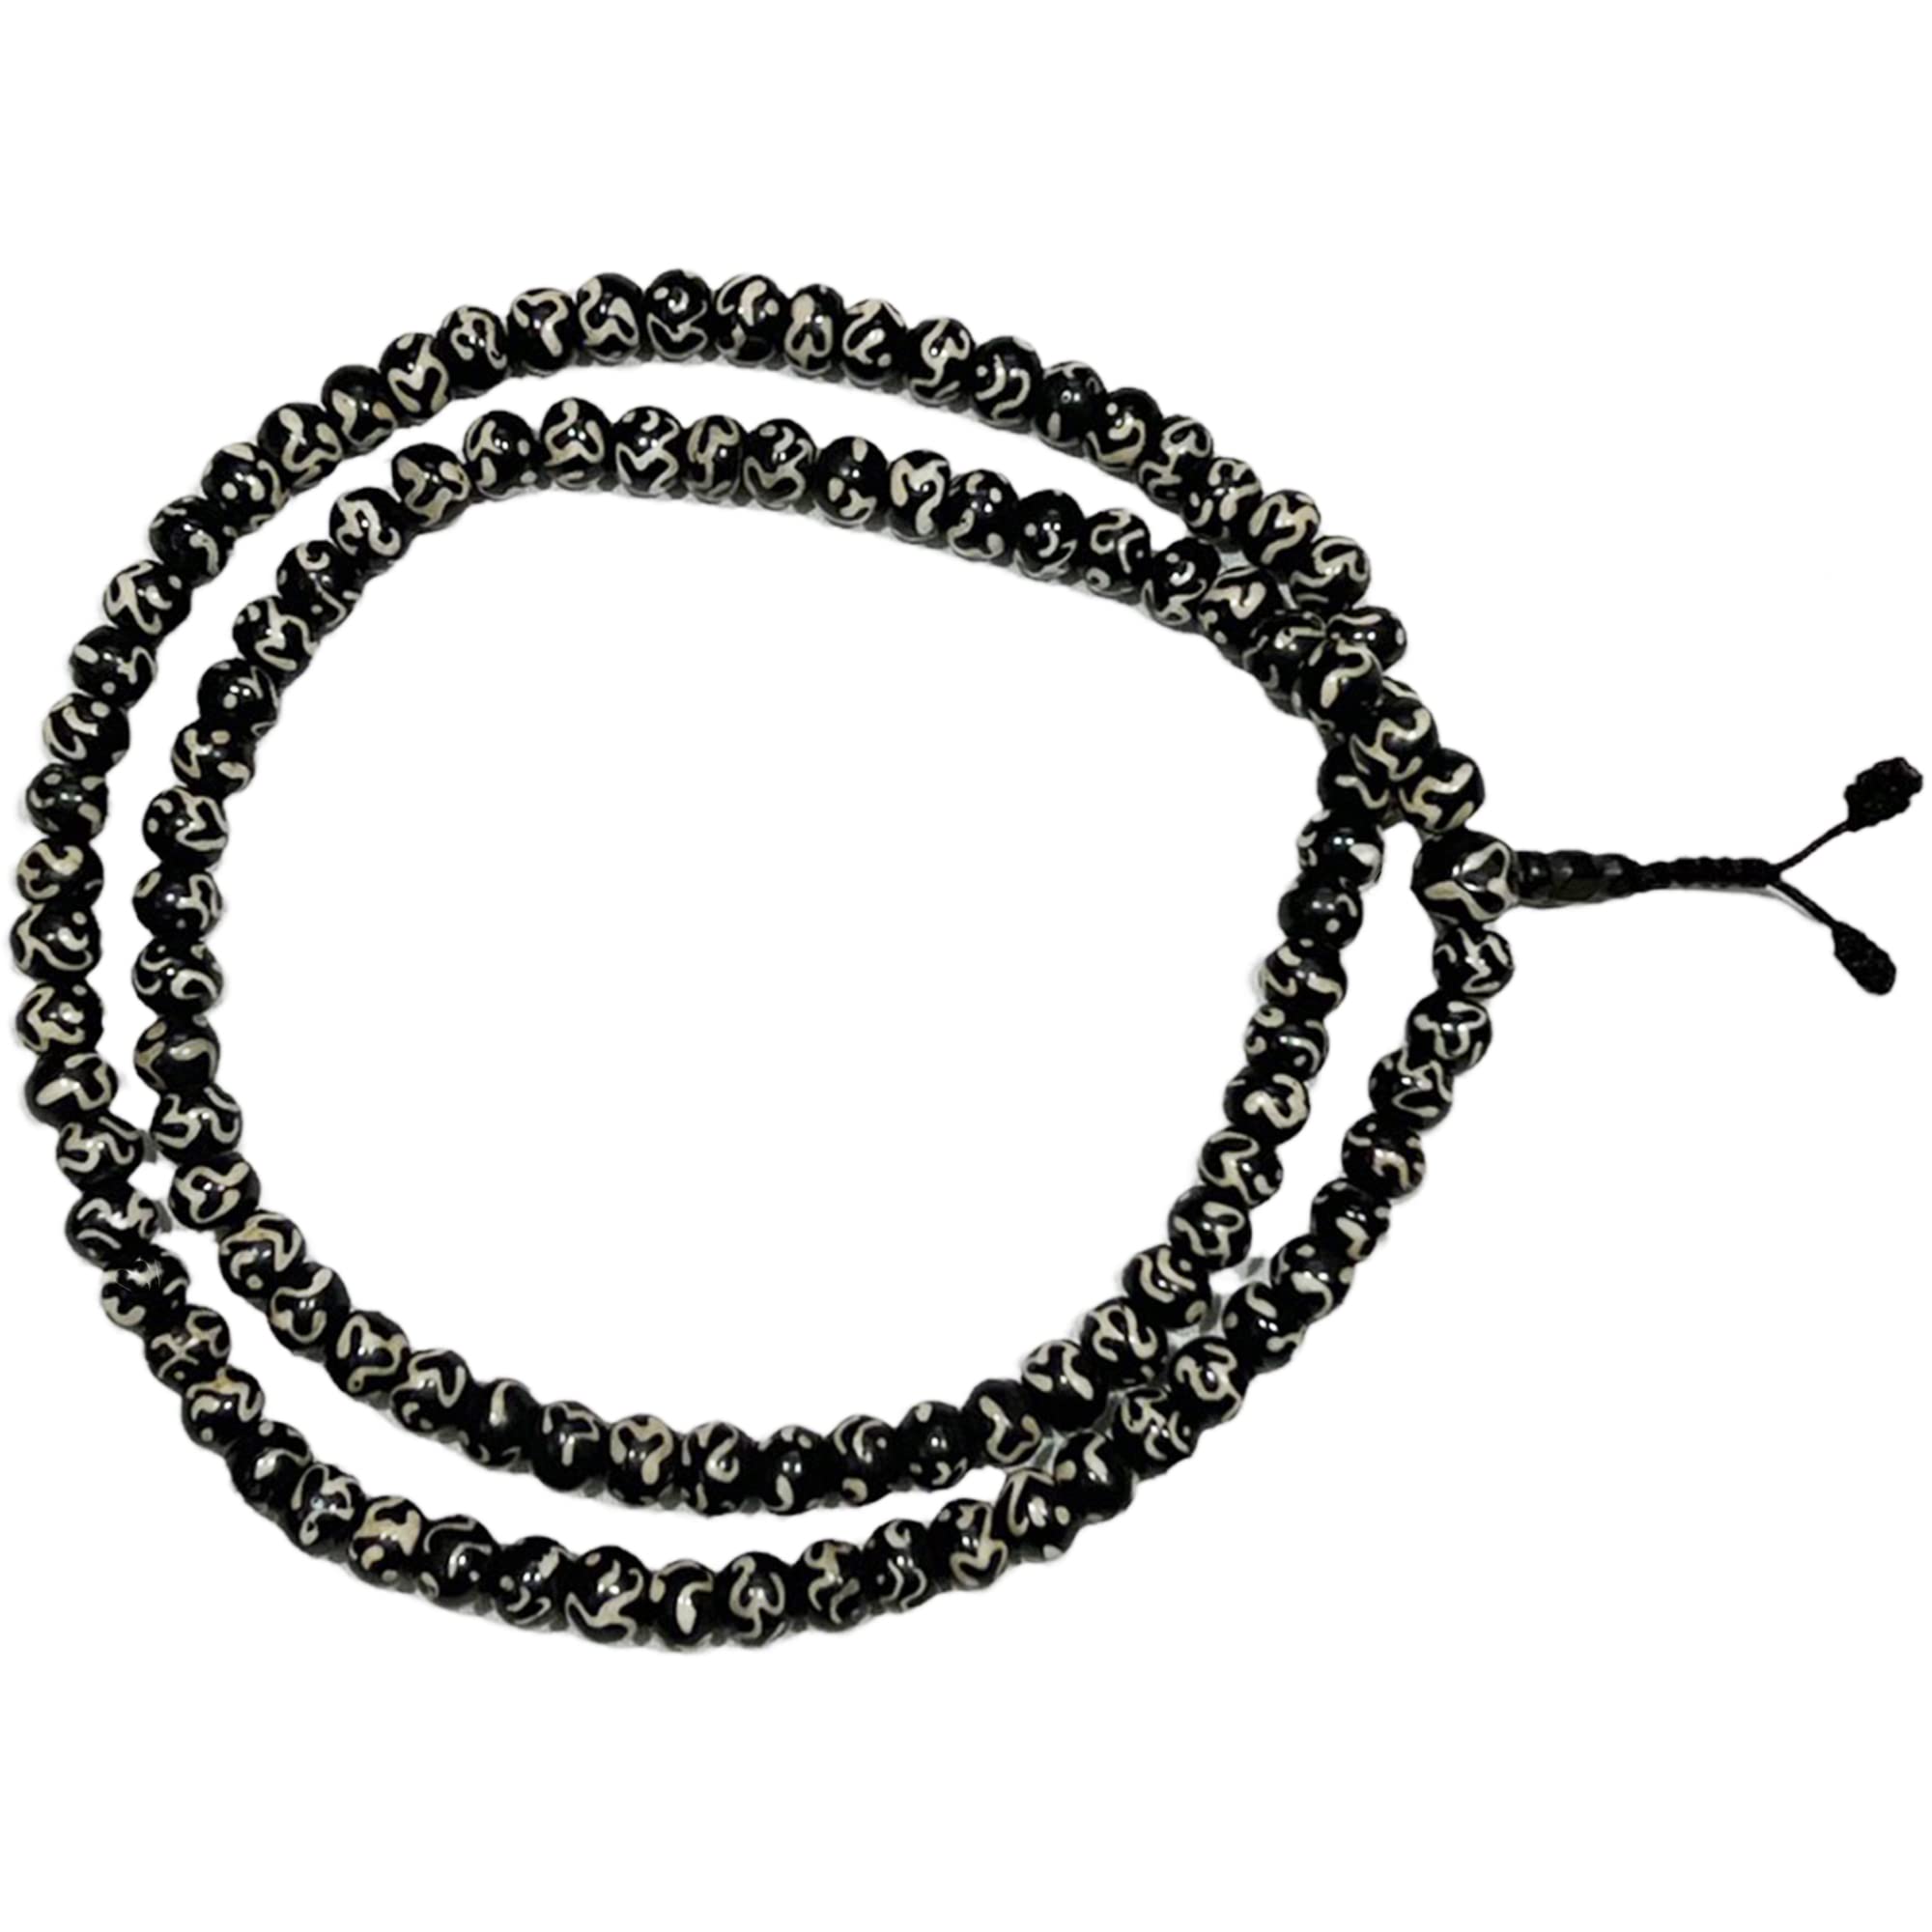  PNEIME 108 Mala Beads Necklace - 8mm Tibetan Prayer